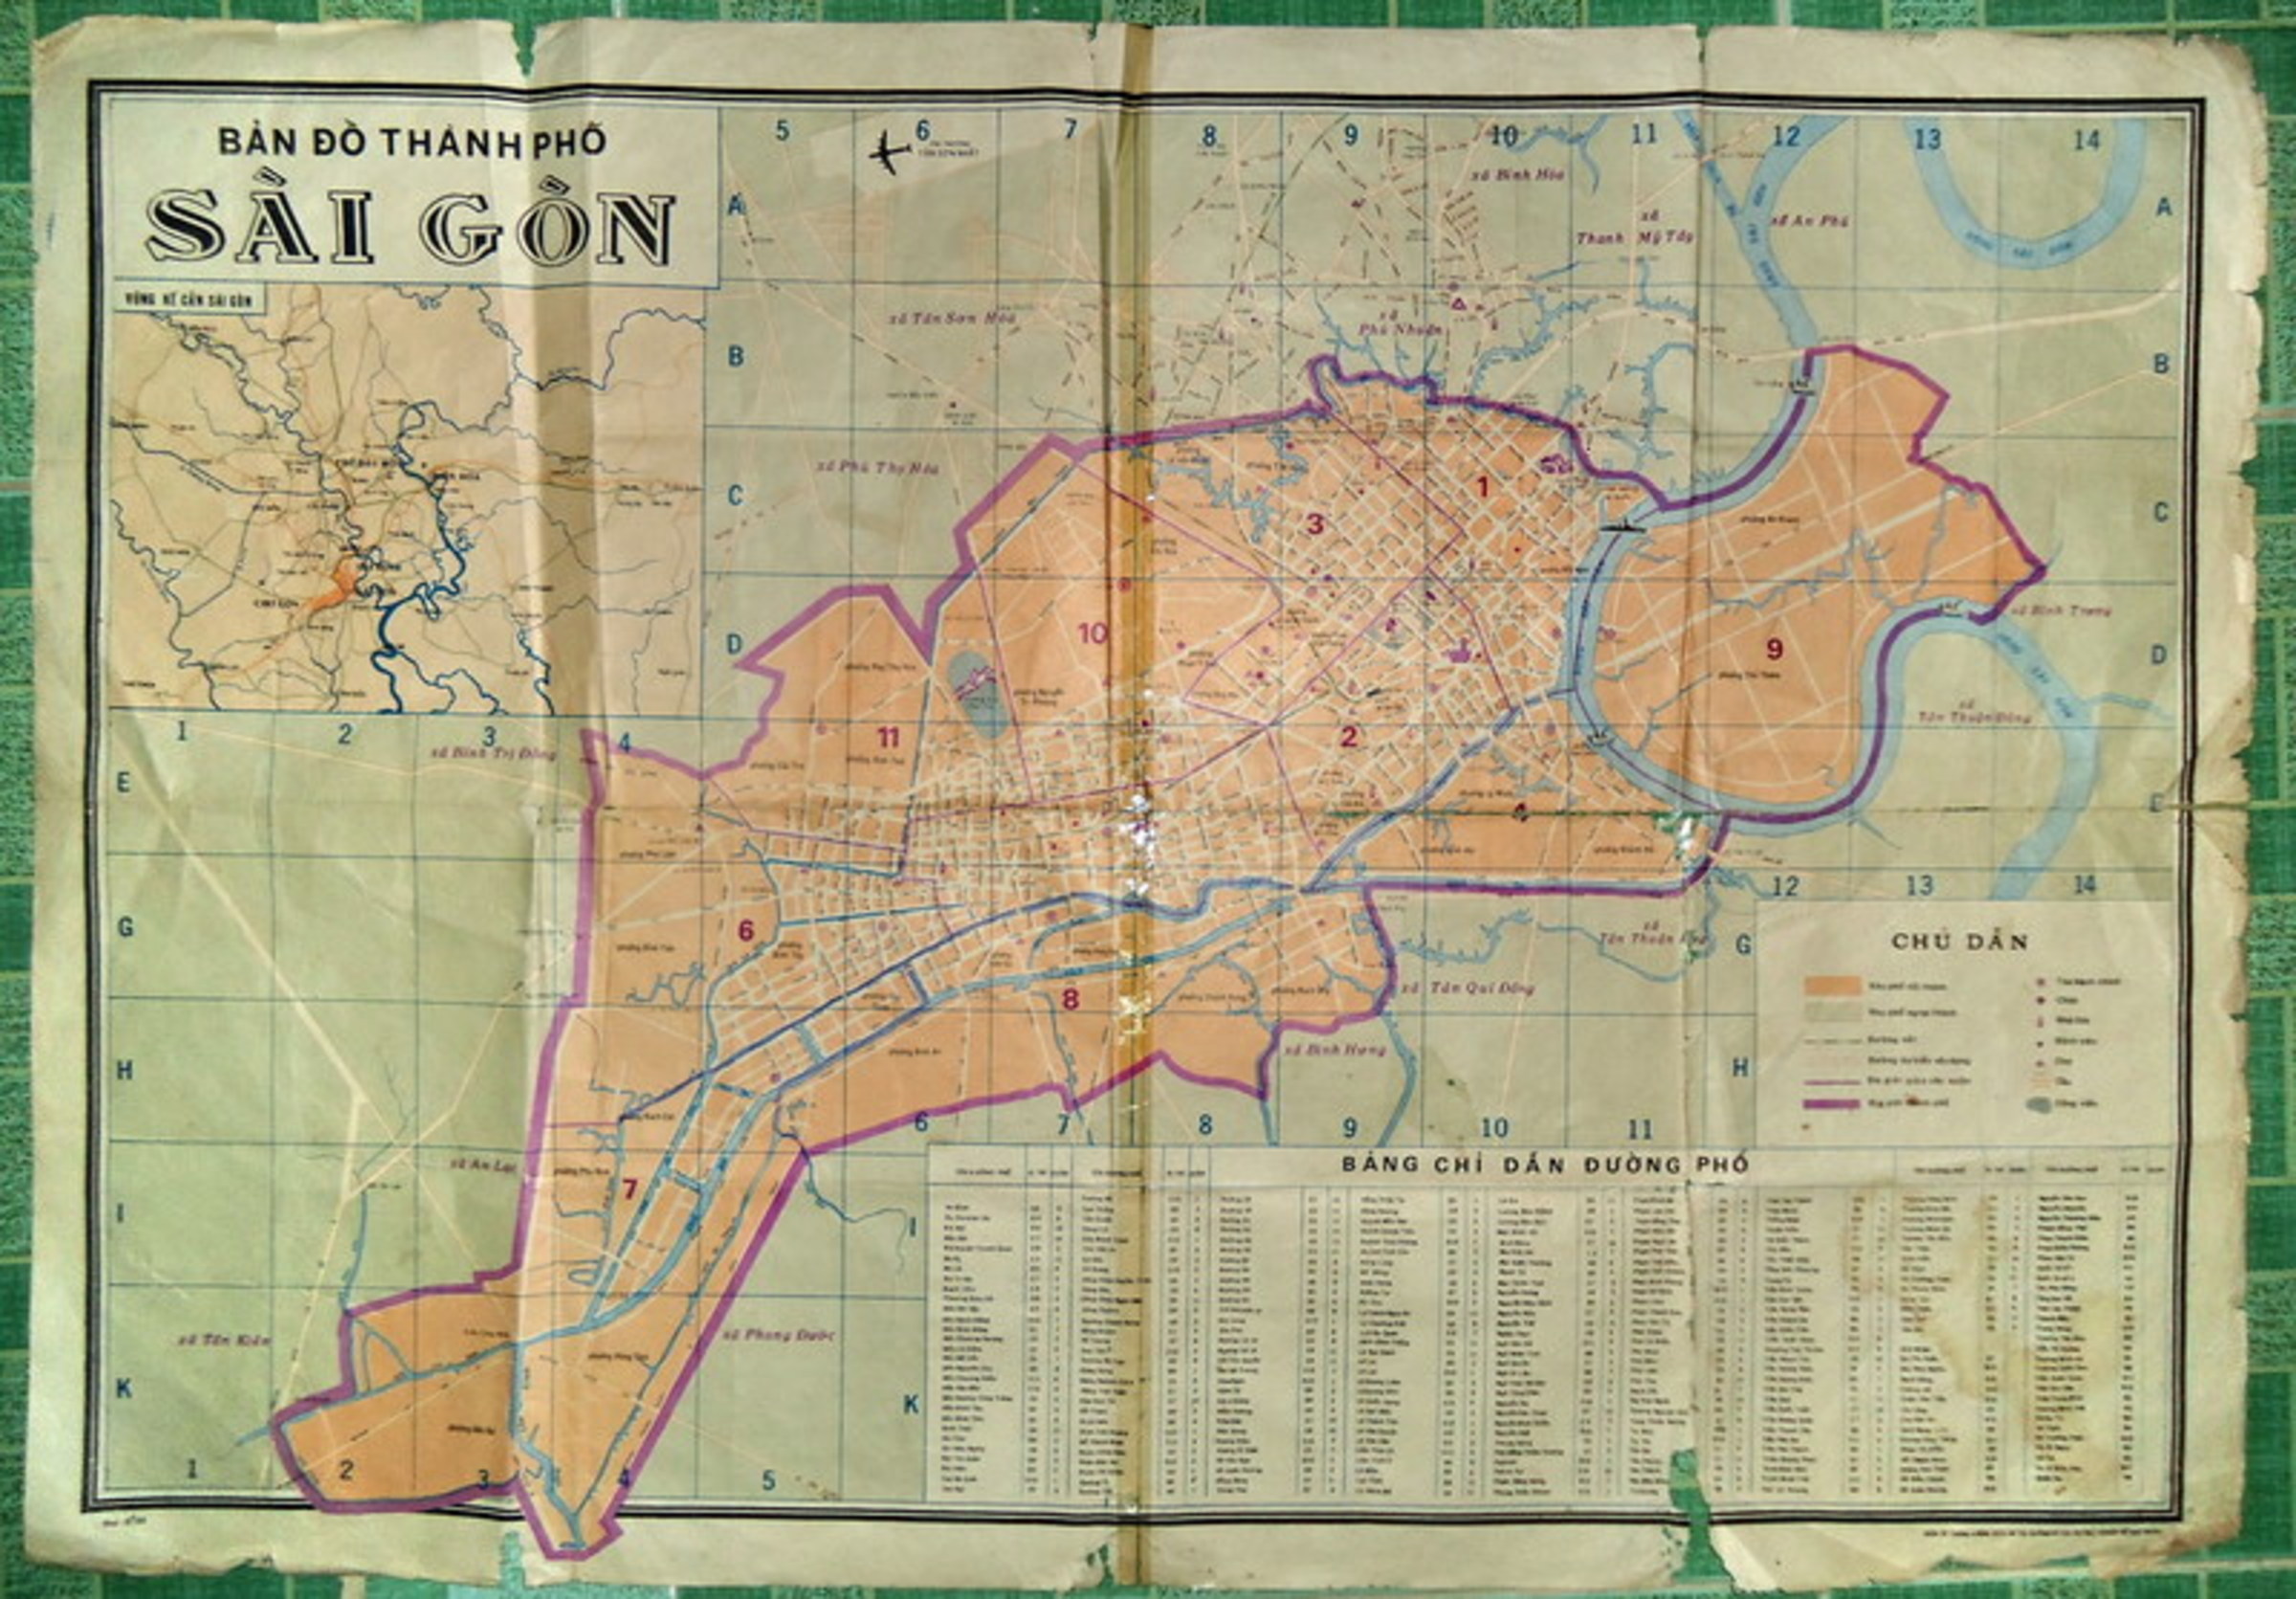 Cơ sở dữ liệu bản đồ ảo Sài Gòn sẽ giúp bạn truy cập dữ liệu mới nhất về thành phố. Khám phá những địa điểm thú vị, tìm hiểu về lịch sử, và cập nhật thông tin về những khu vực đang phát triển trong thành phố này.